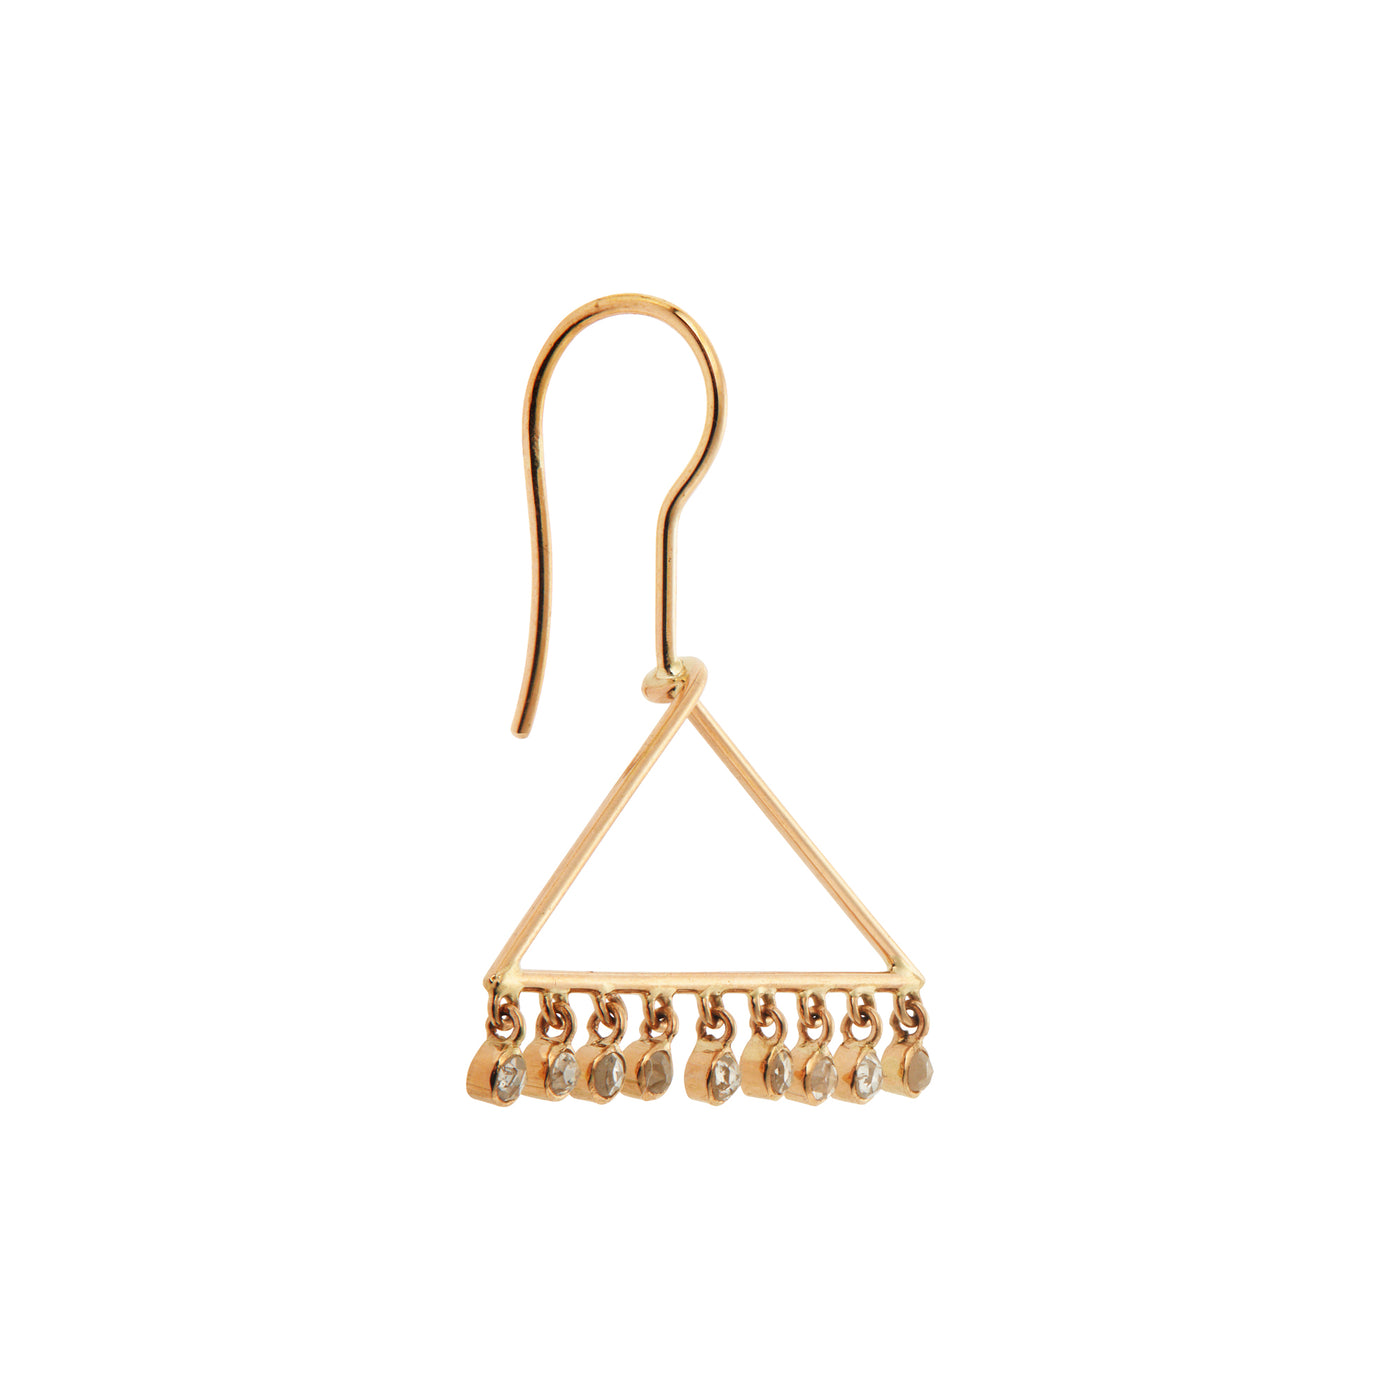 Diamond Hanger Earrings Y-CHD - Ileana Makri